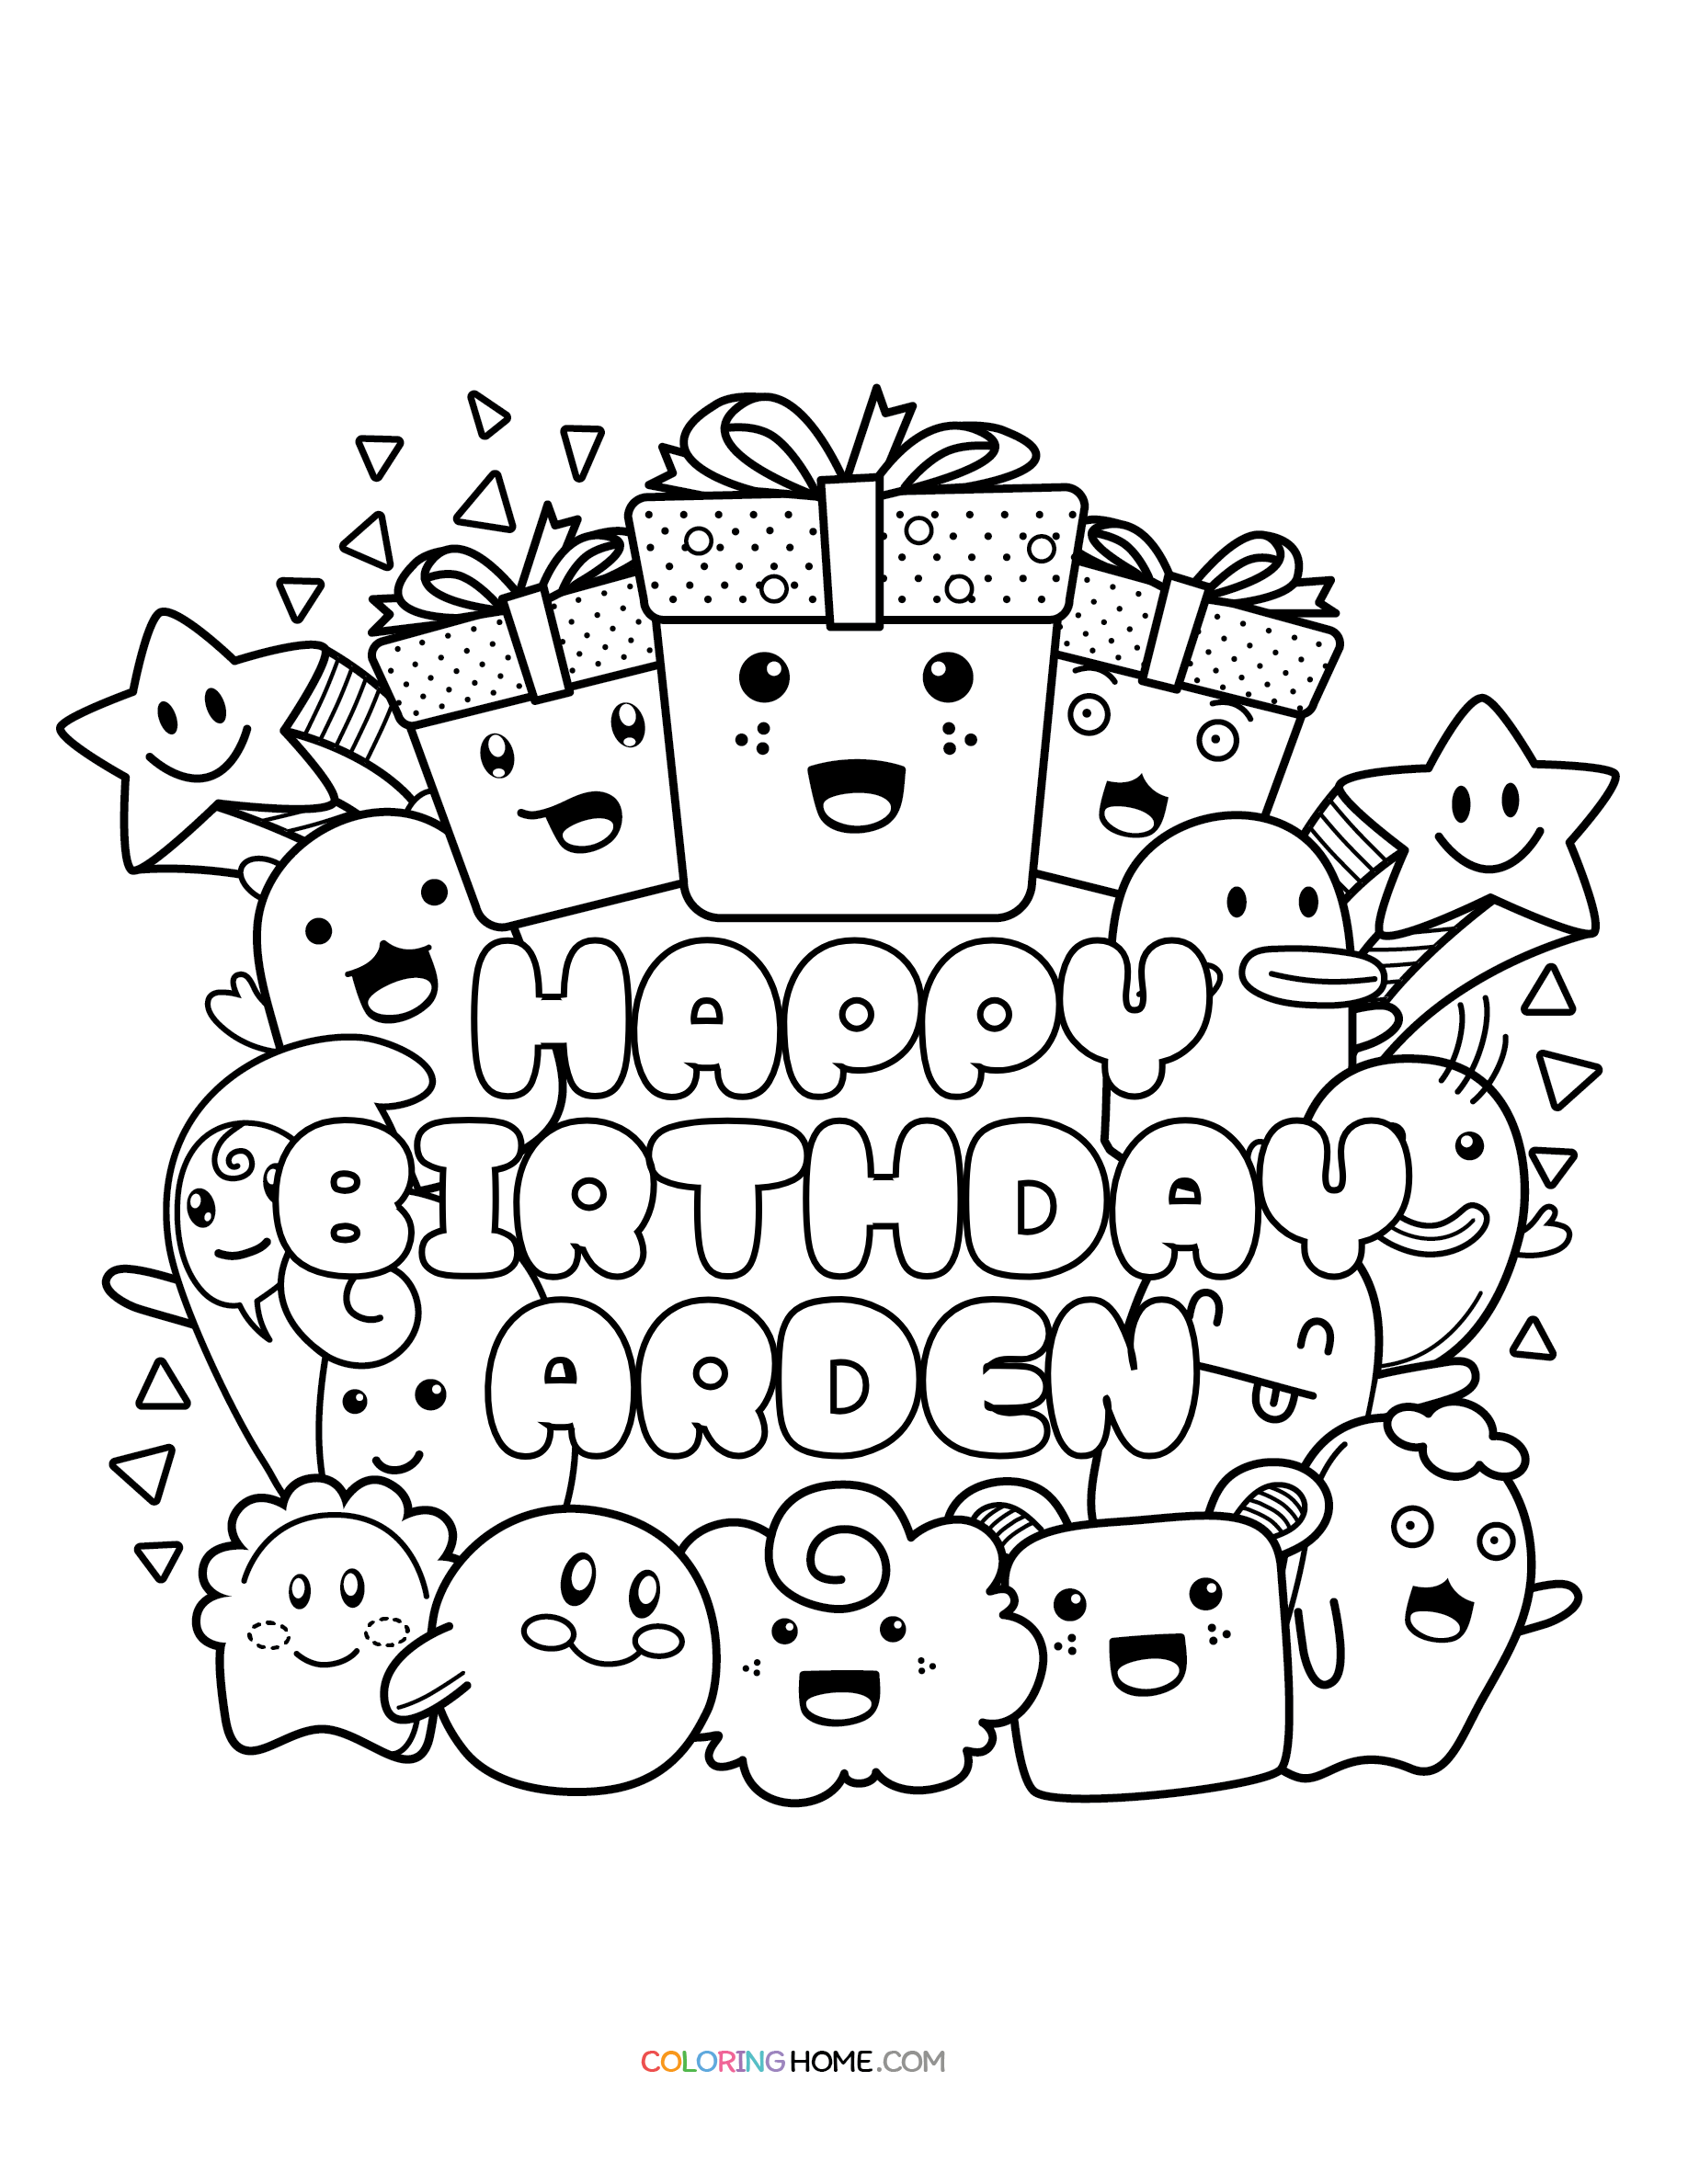 Happy Birthday Arden coloring page